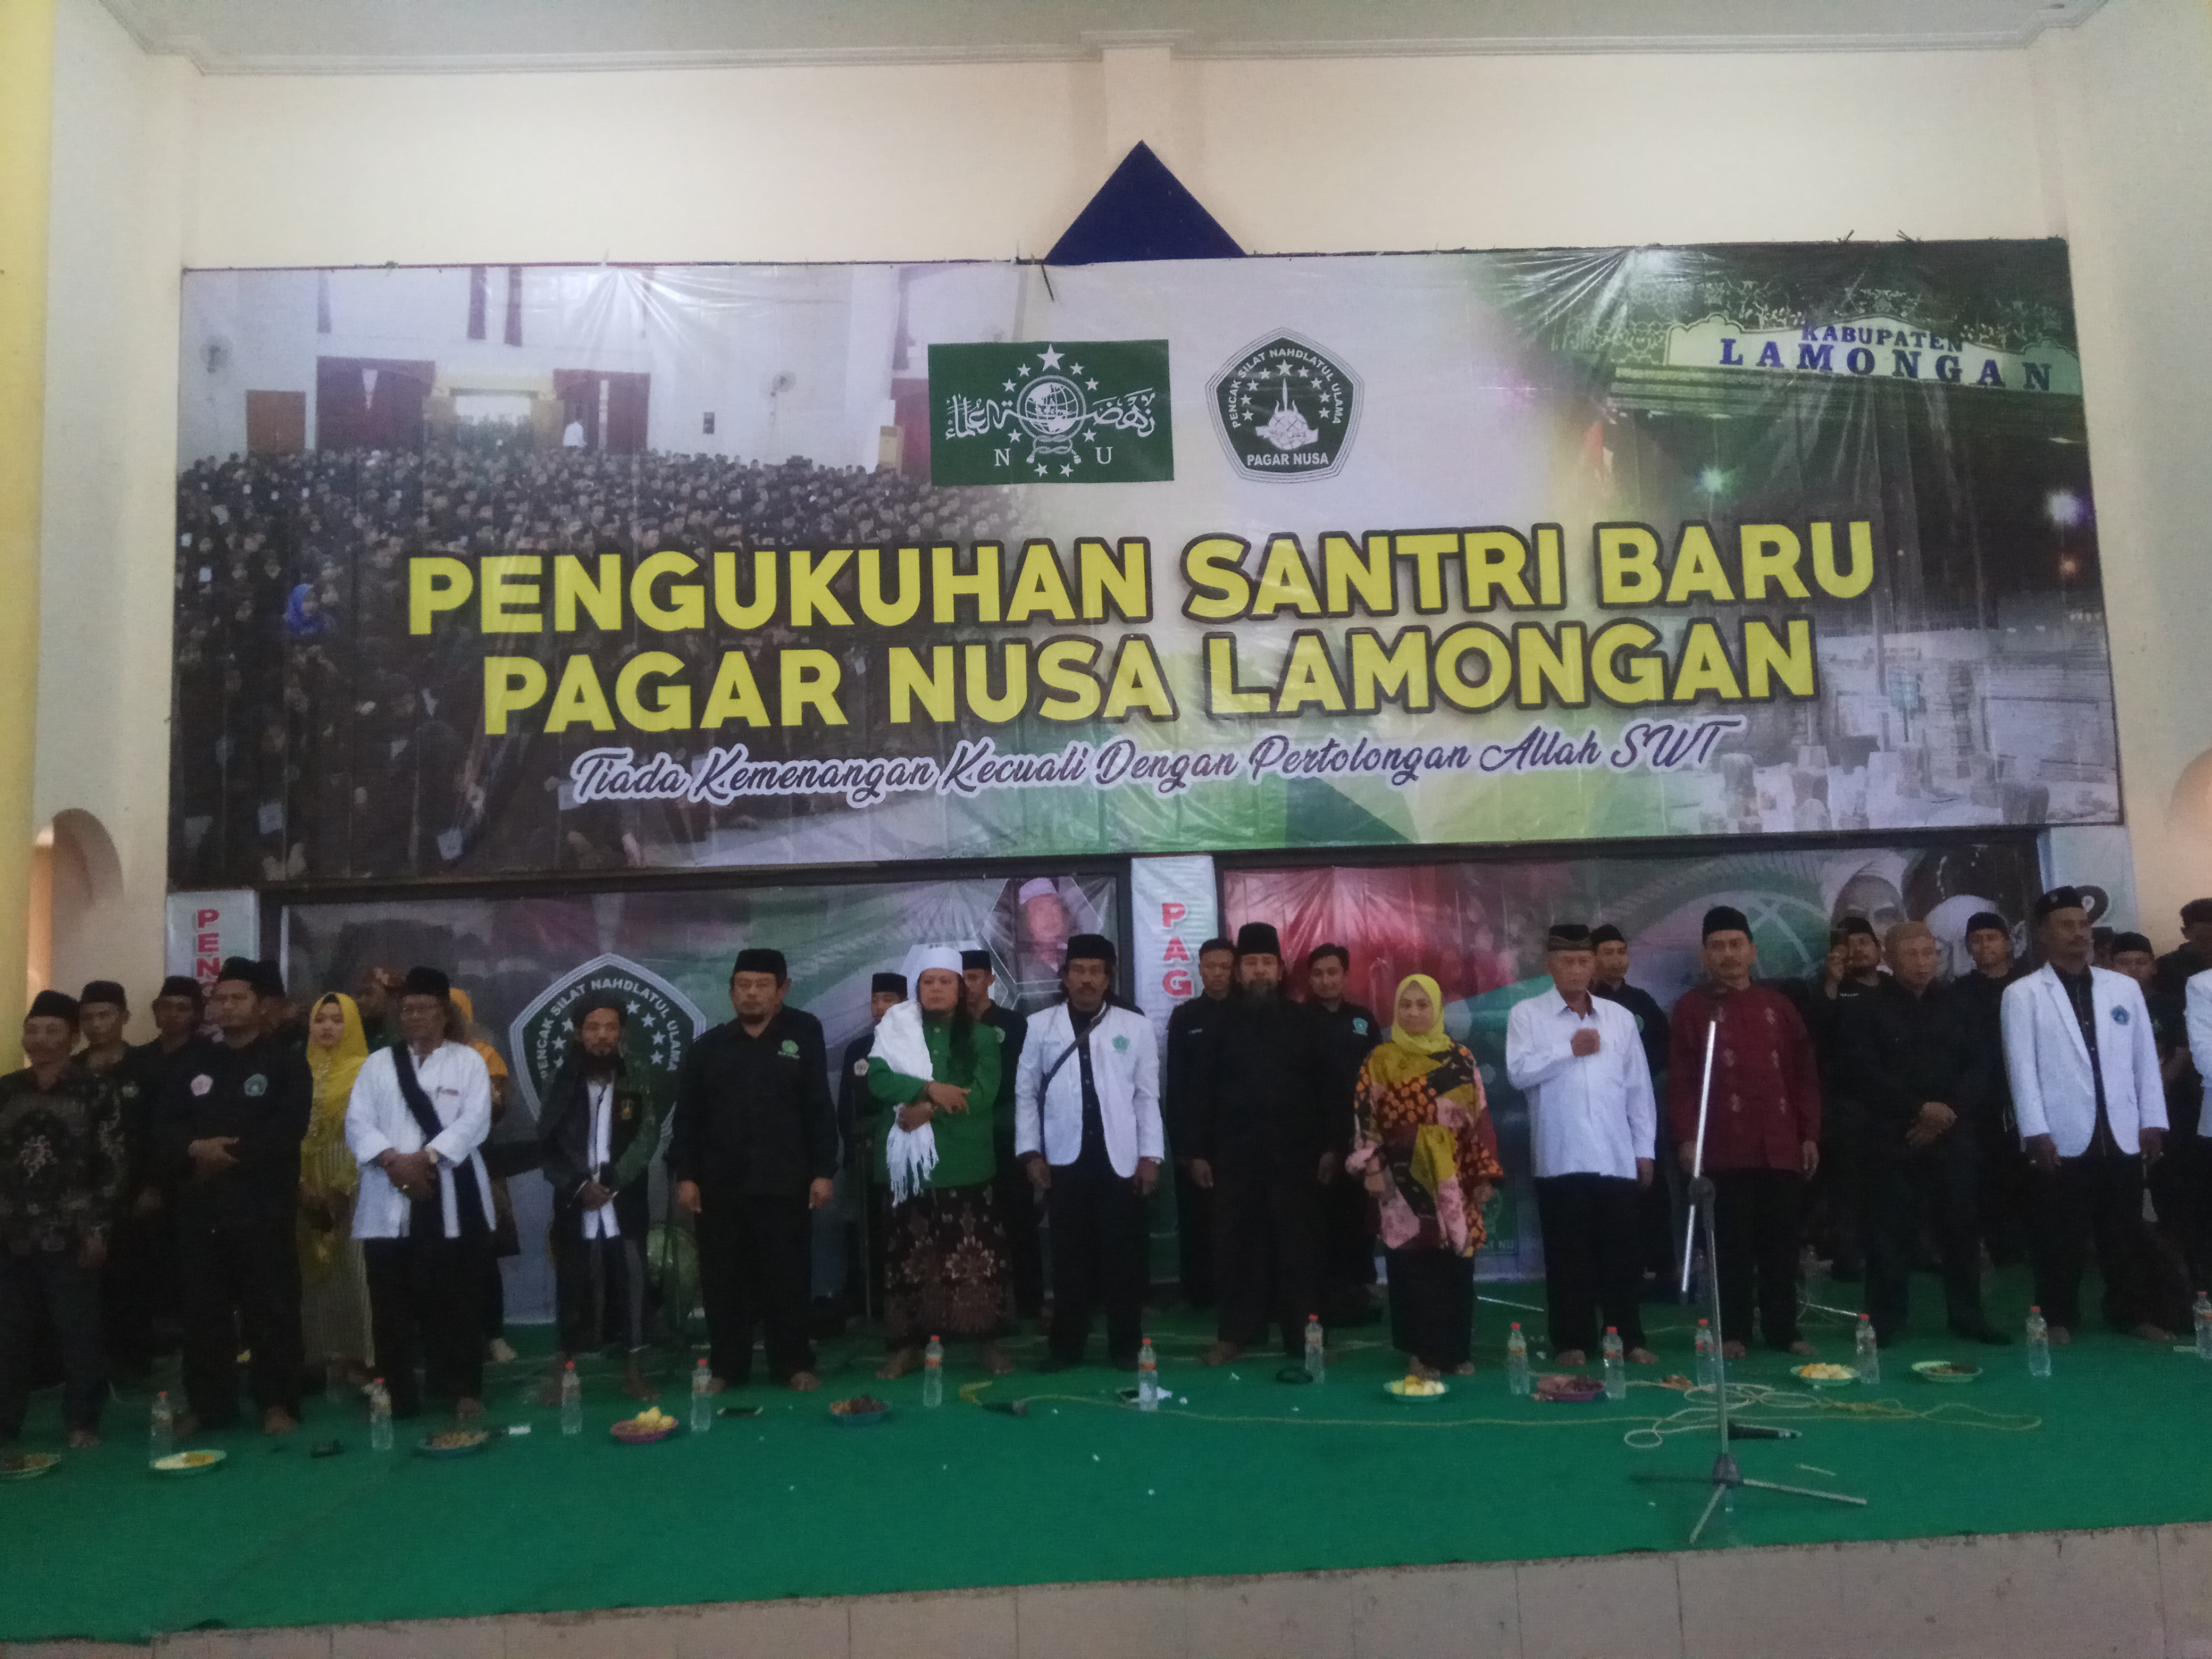 Pengukuhan Santri Baru Silat Nahdlatul Ulama Pagar Nusa Lamongan, di hadiri Kartika Hidayati